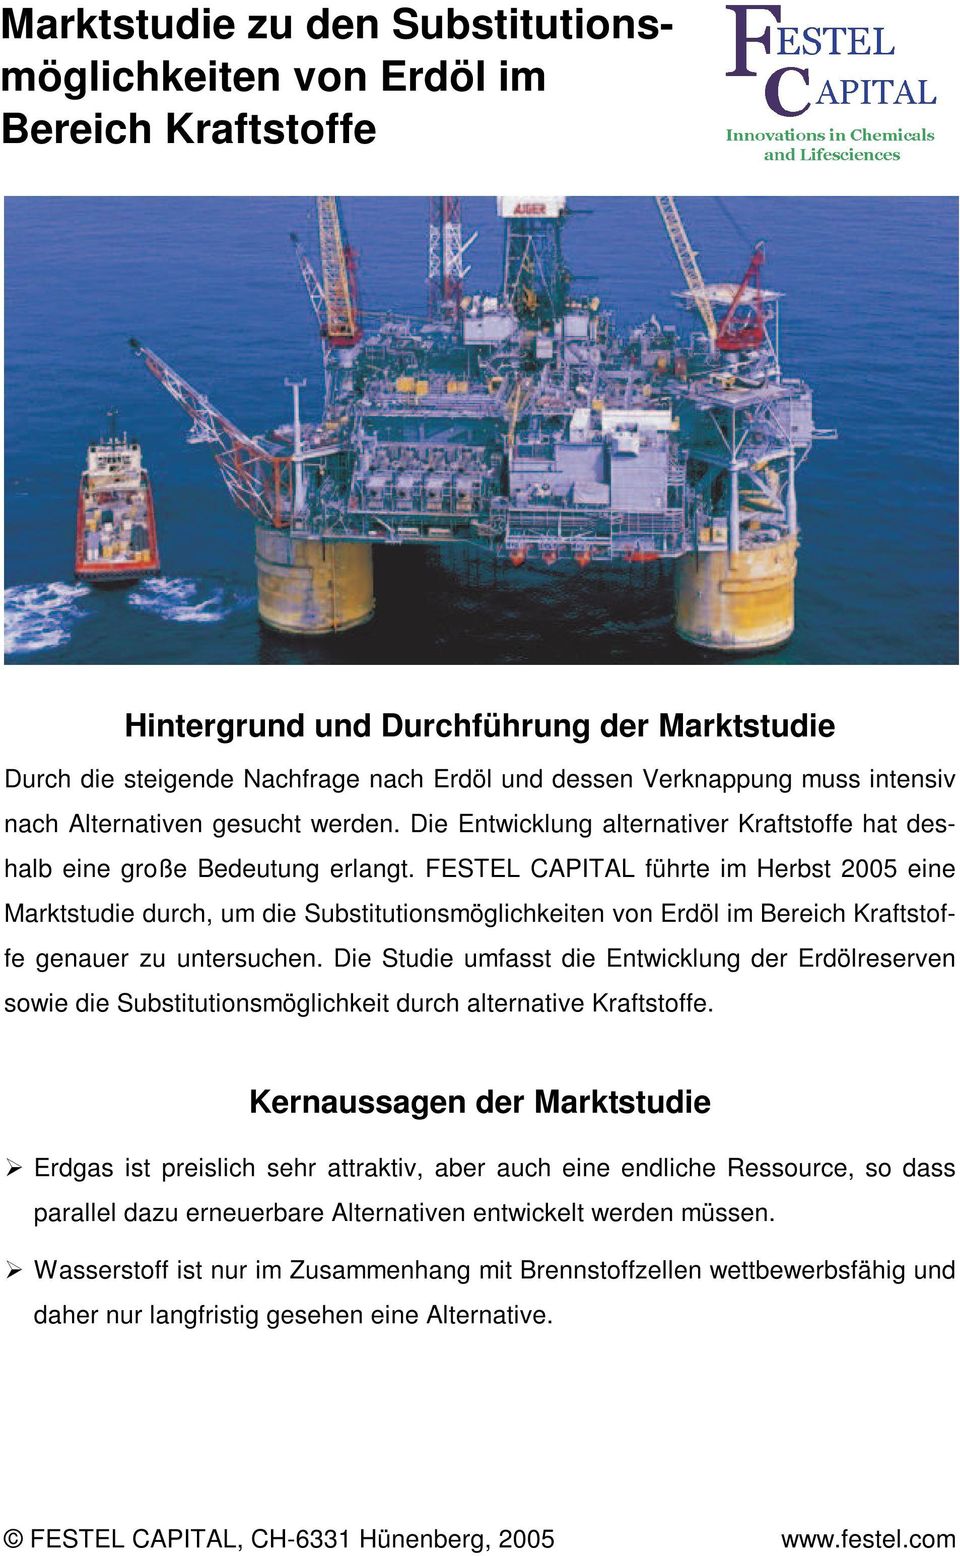 FESTEL CAPITAL führte im Herbst 2005 eine Marktstudie durch, um die Substitutionsmöglichkeiten von Erdöl im Bereich Kraftstoffe genauer zu untersuchen.